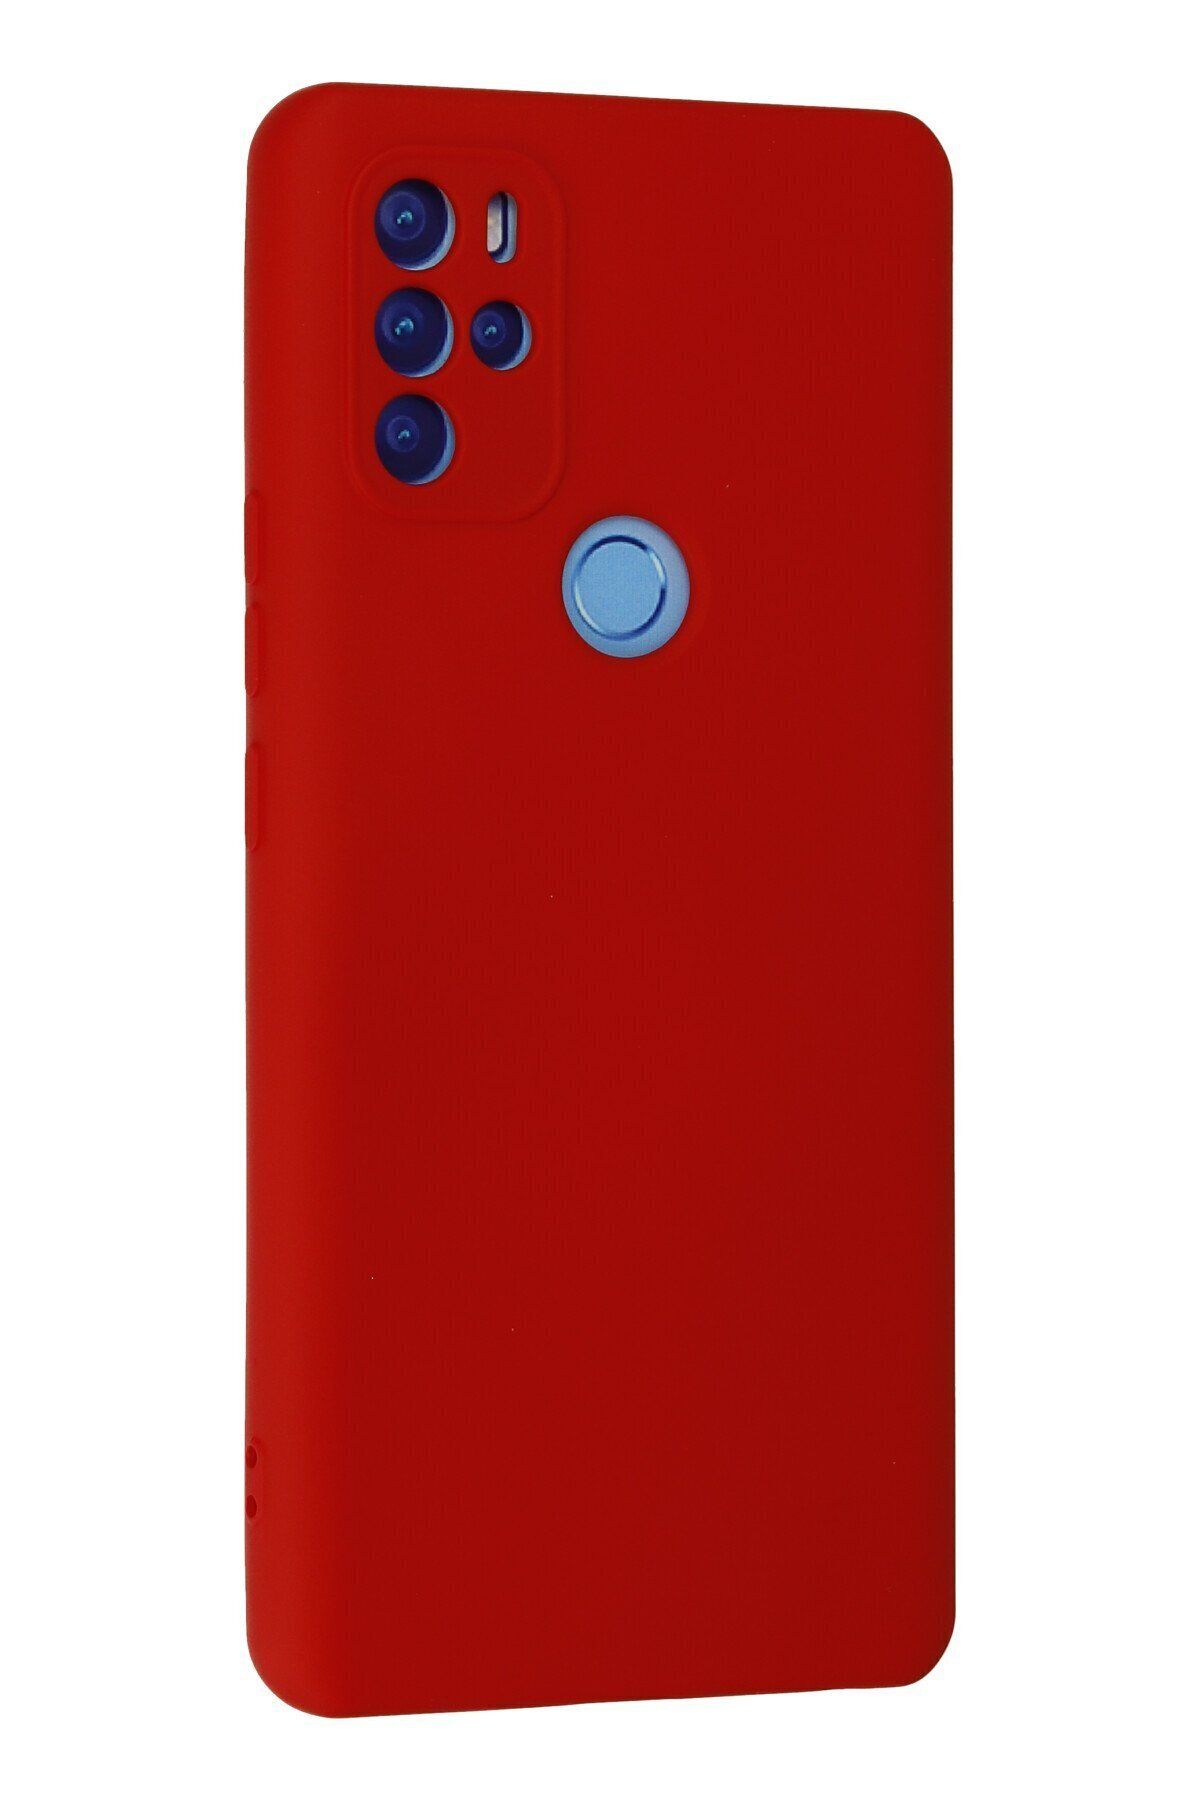 NewFace Omix X500 - Soft Dokulu İç Kısmı Süet Lansman Kılıf - Kırmızı Renk içi kadife Kapak